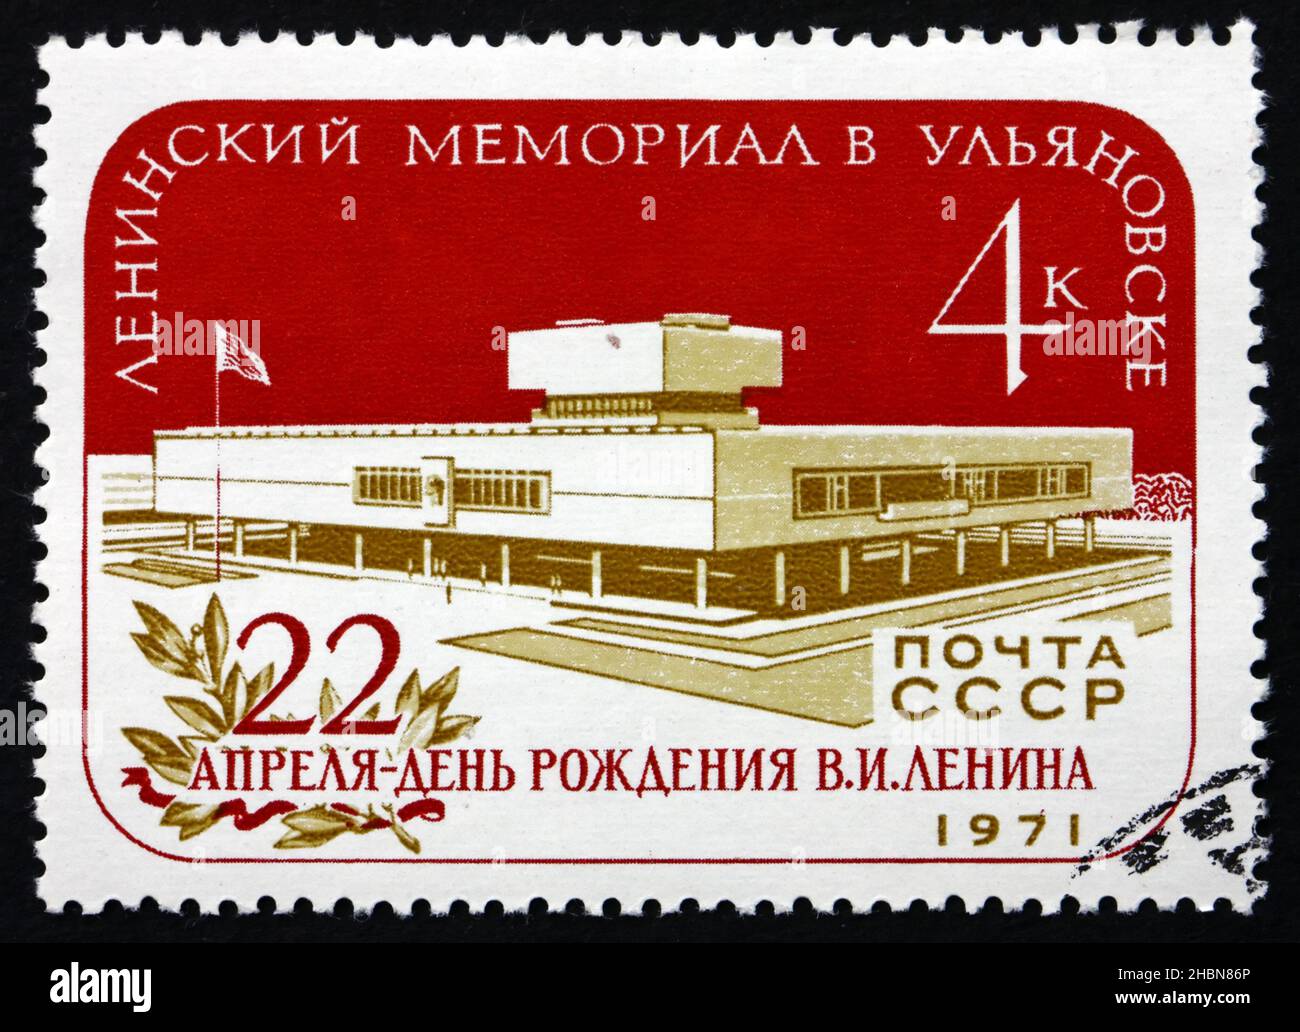 RUSSLAND - UM 1971: Eine in Russland gedruckte Briefmarke zeigt das Lenin-Denkmal, Uljanowsk, das Denkmal wurde anlässlich der hundertjährigen Feier der Geburt Lenins errichtet Stockfoto